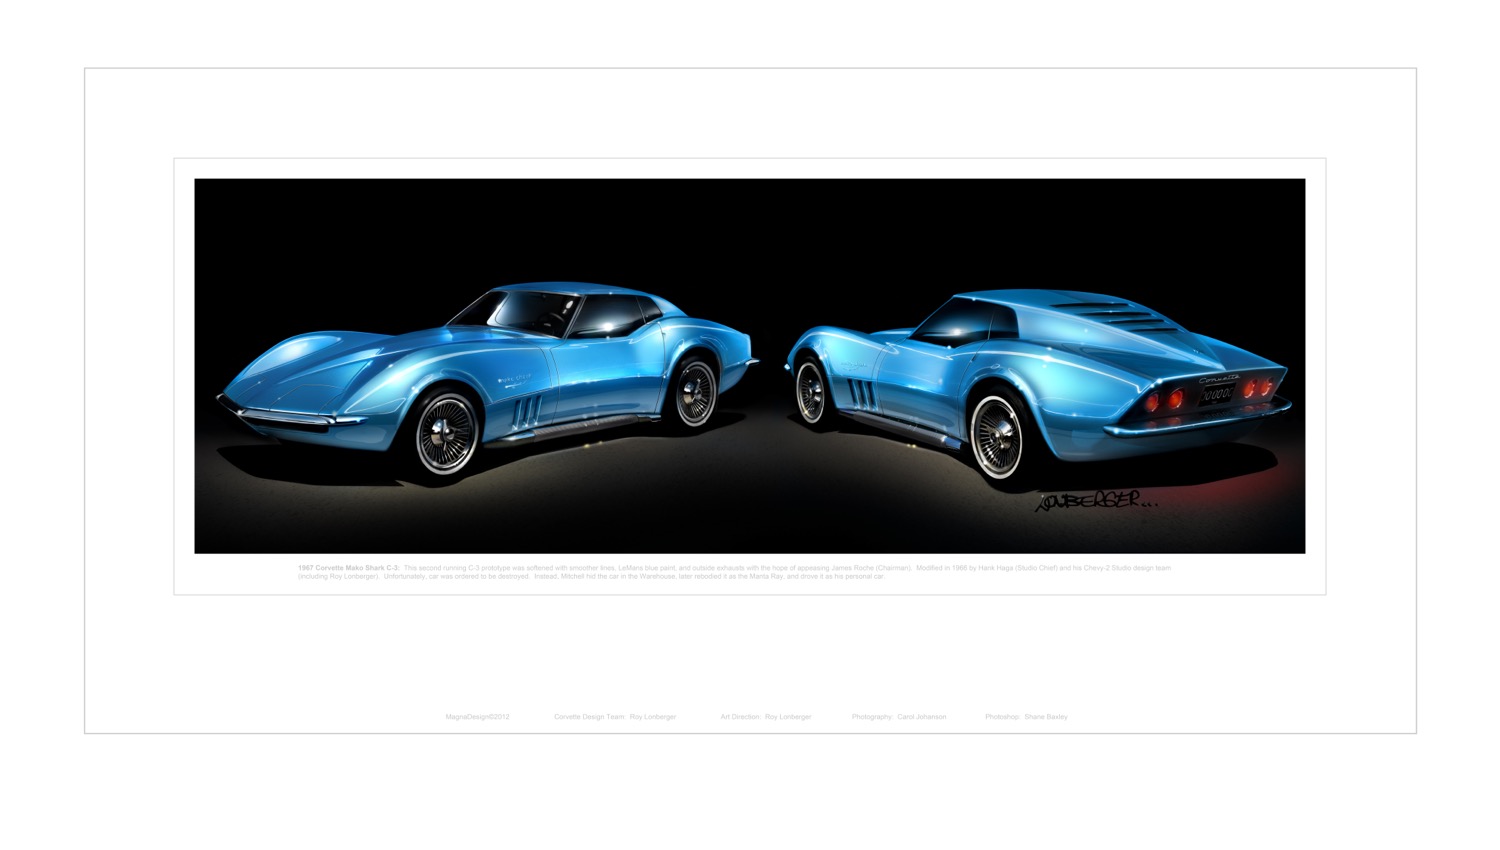 7-Corvette Mako Shark-1967- C-3-Blue-Wall Poster-LowRez.jpg